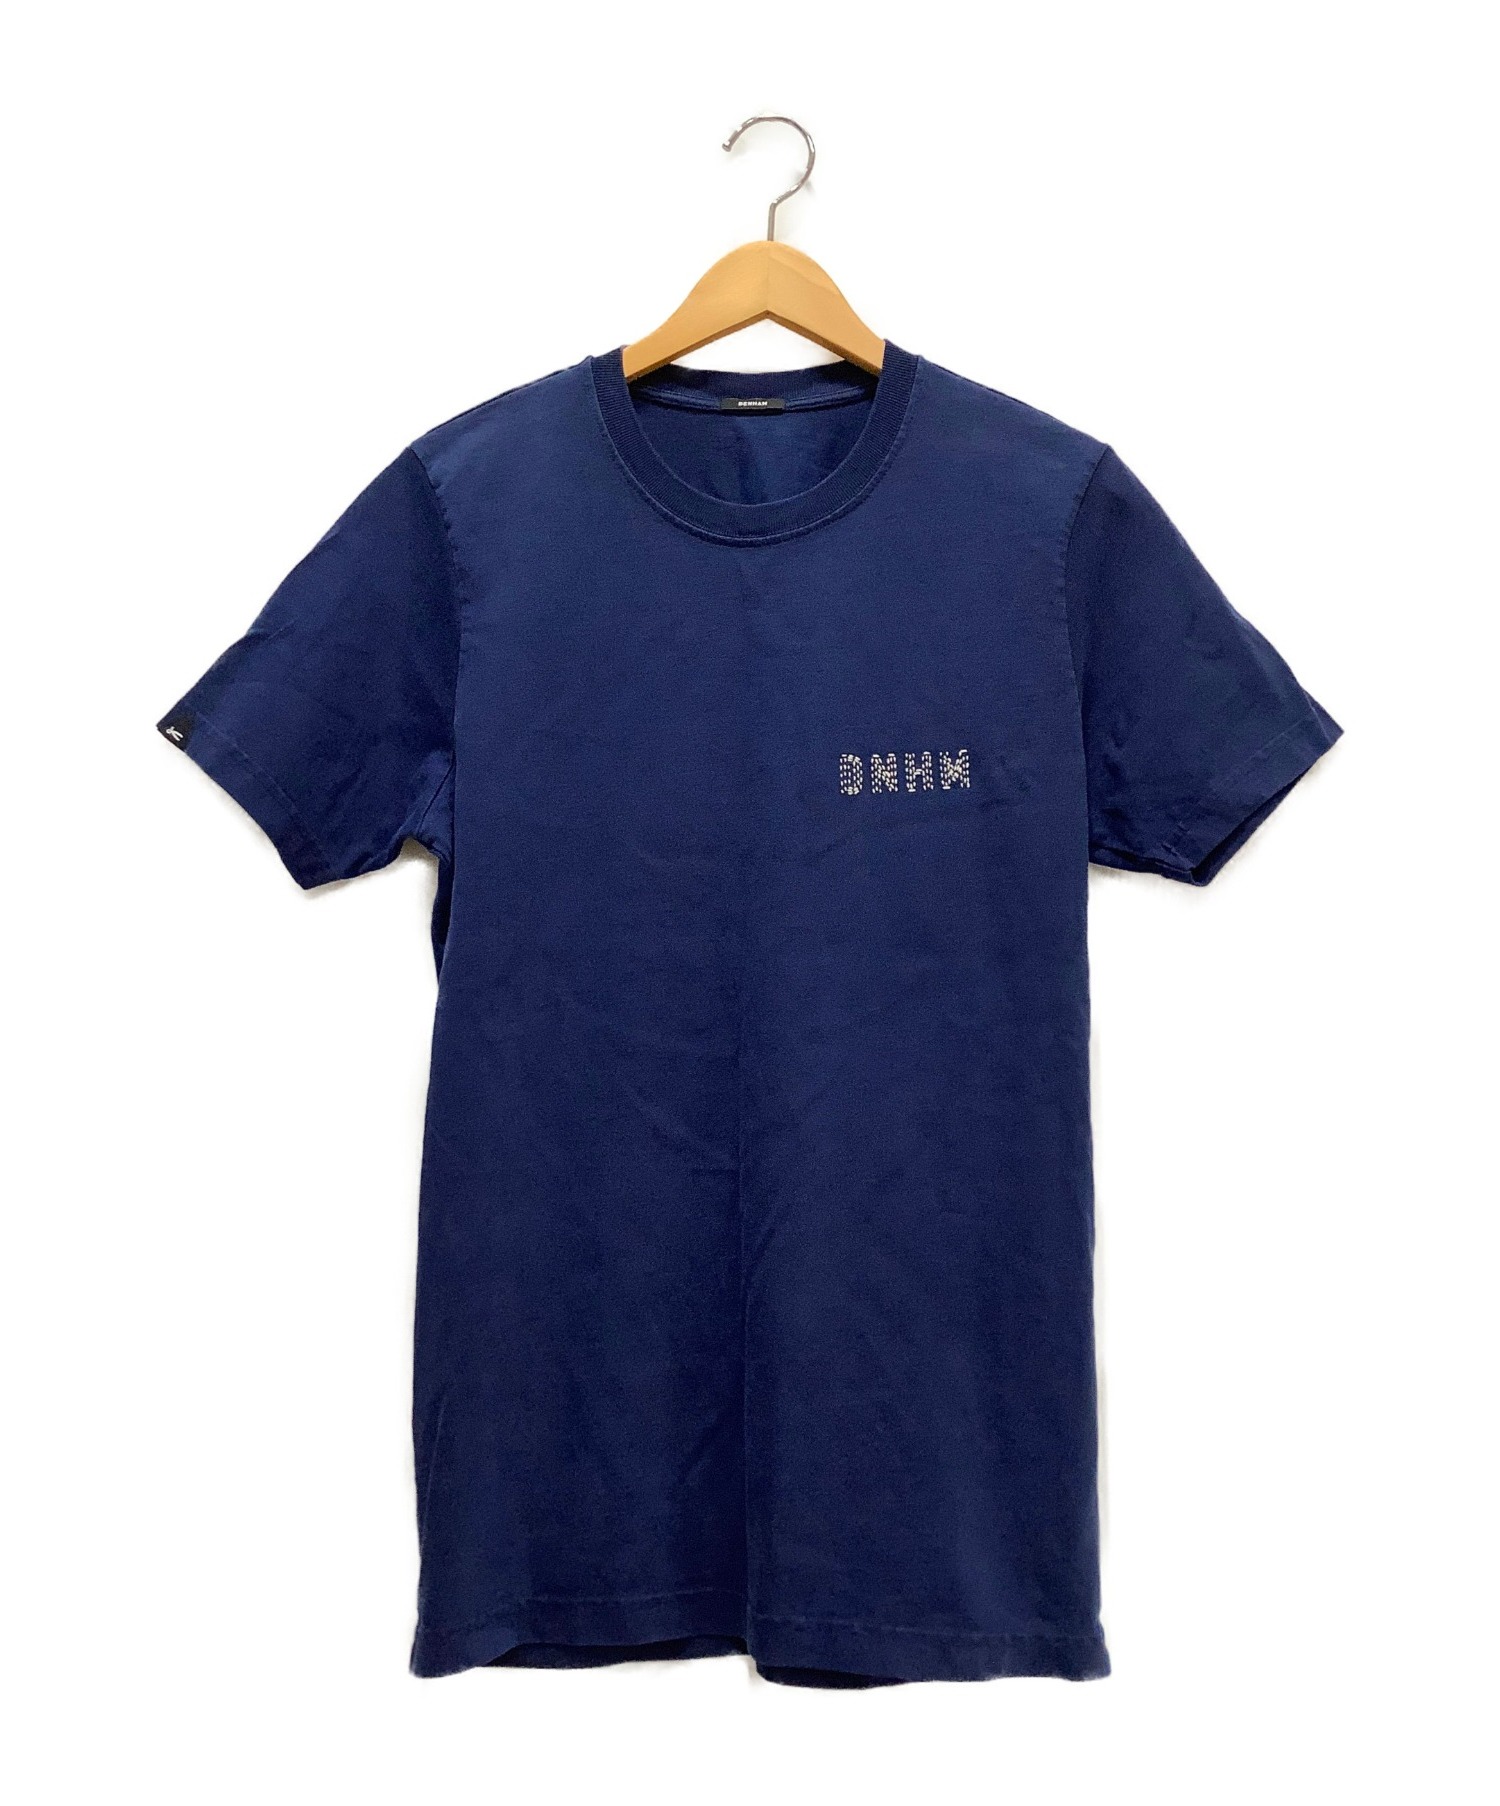 Denham (デンハム) Tシャツ ネイビー サイズ:S